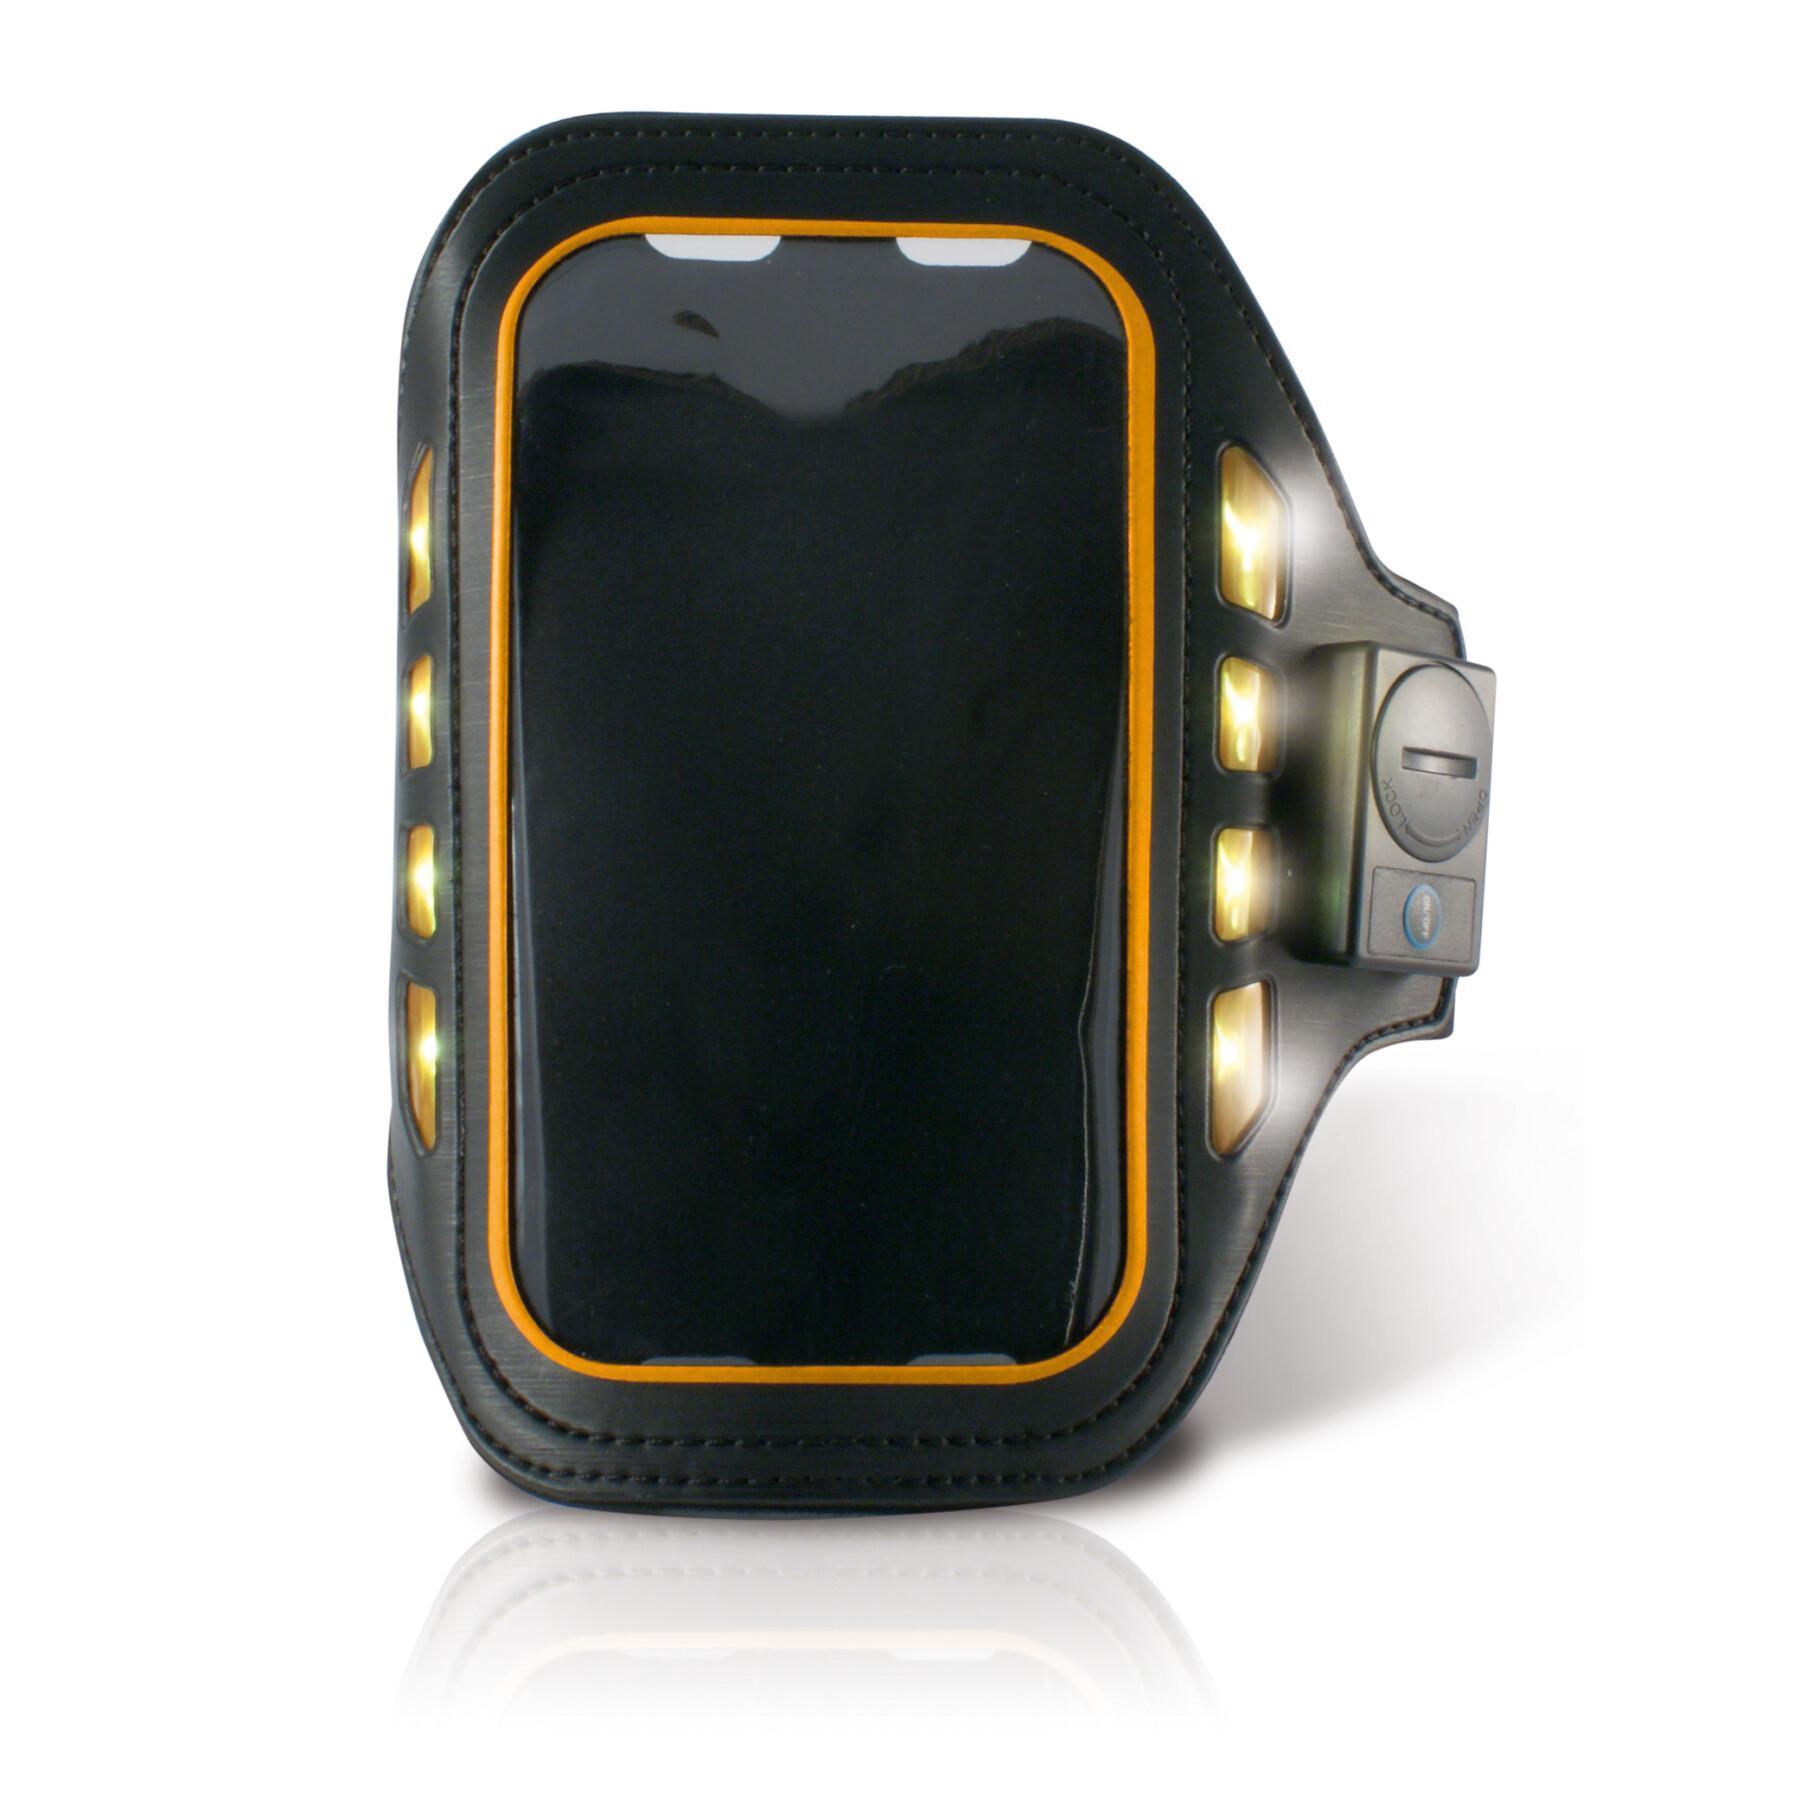 Brazalete LED universal para smartphone Ksix